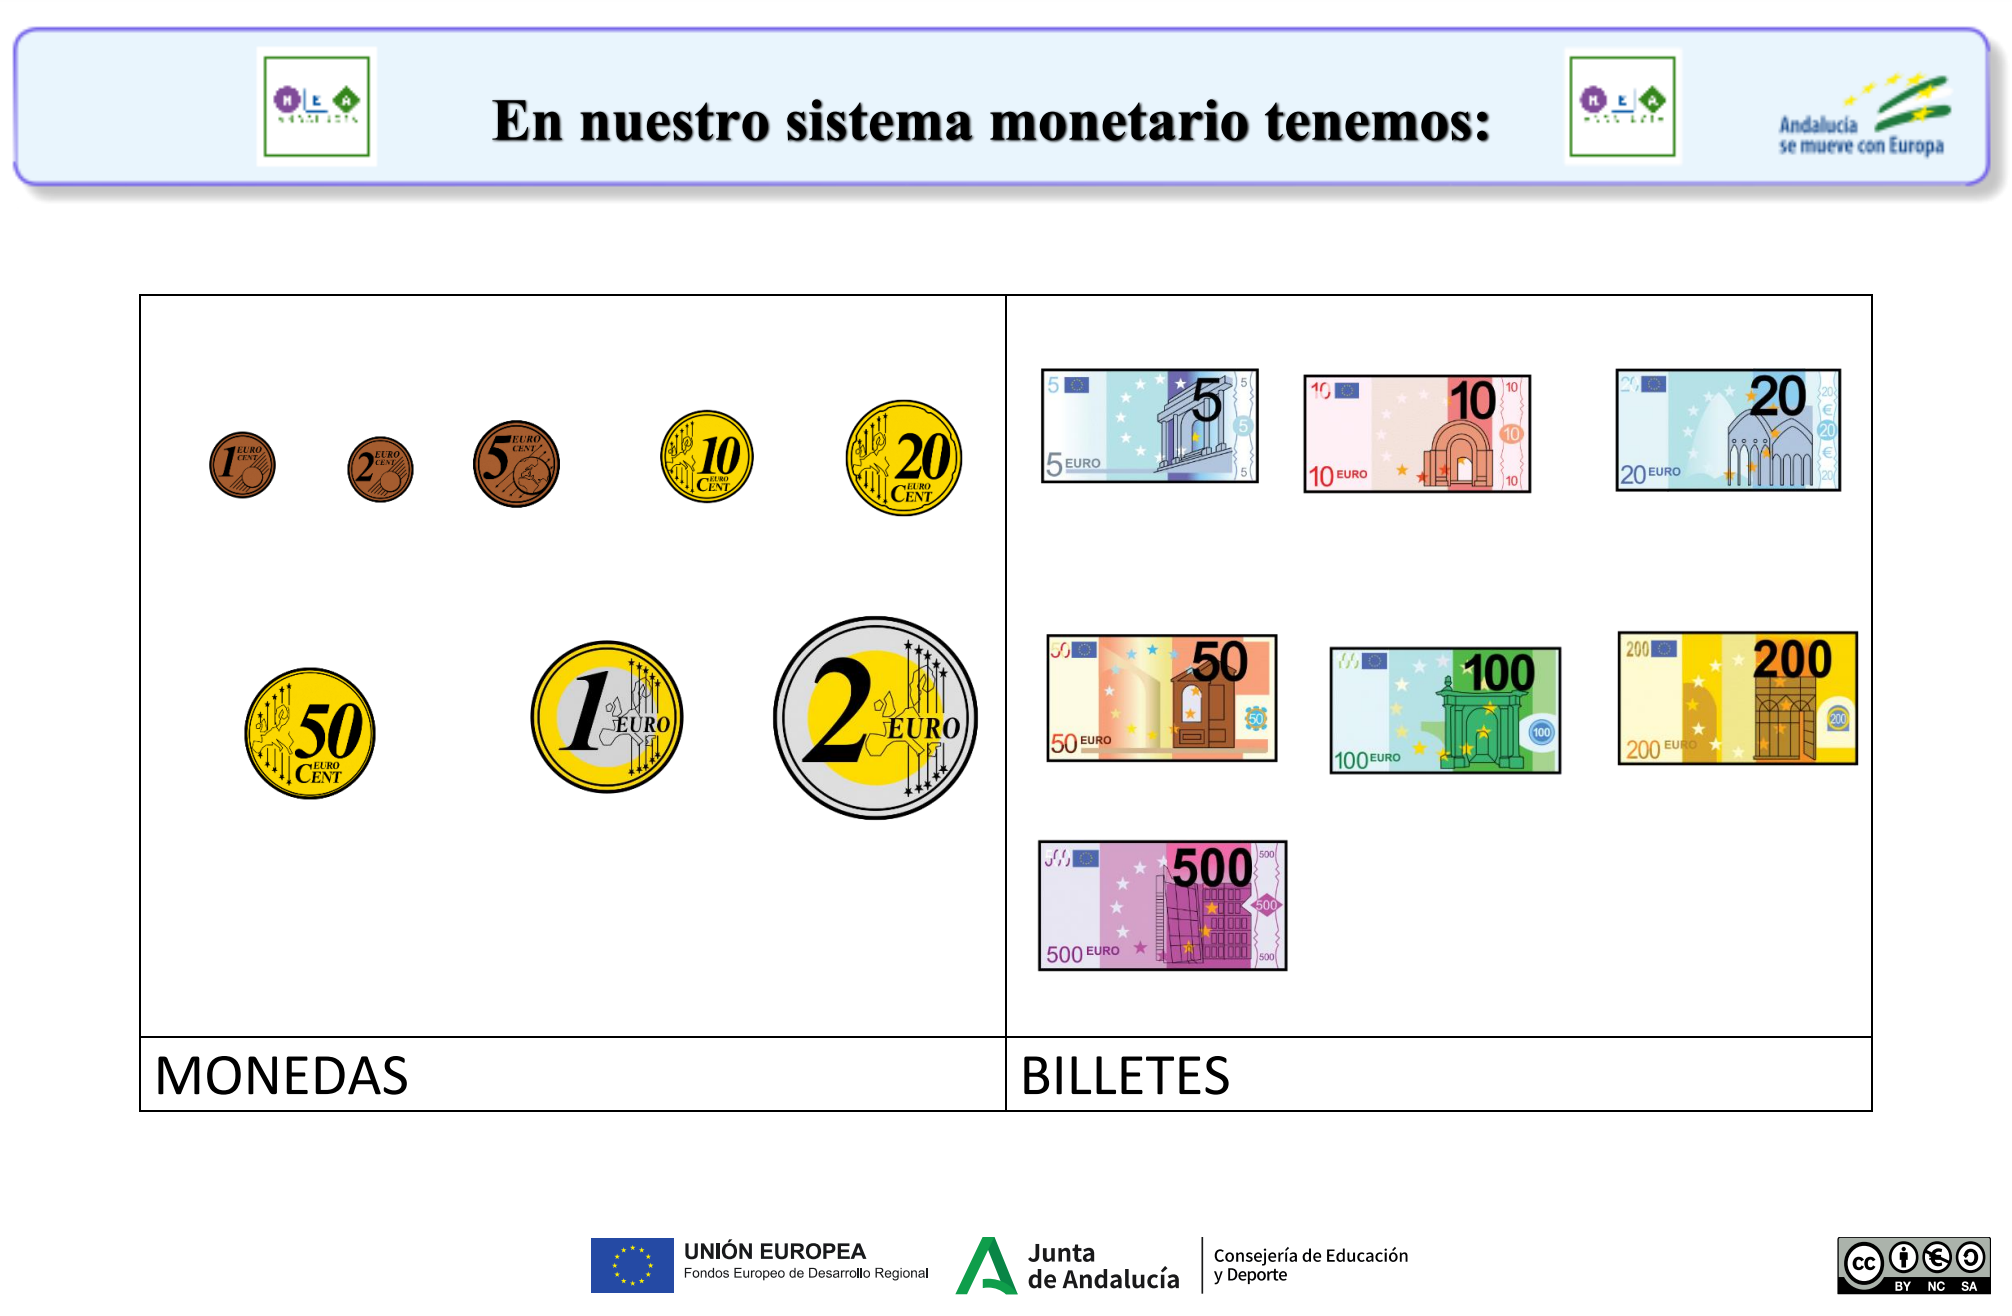 En nuestro sistema monetario tenemos monedas de uno, dos, cinco, diez, veinte y cincuenta céntimos y monedas de uno y dos euros.  Además, tenemos billetes de cinco, diez, veinte, cincuenta, cien, doscientos y quinientos euros. 